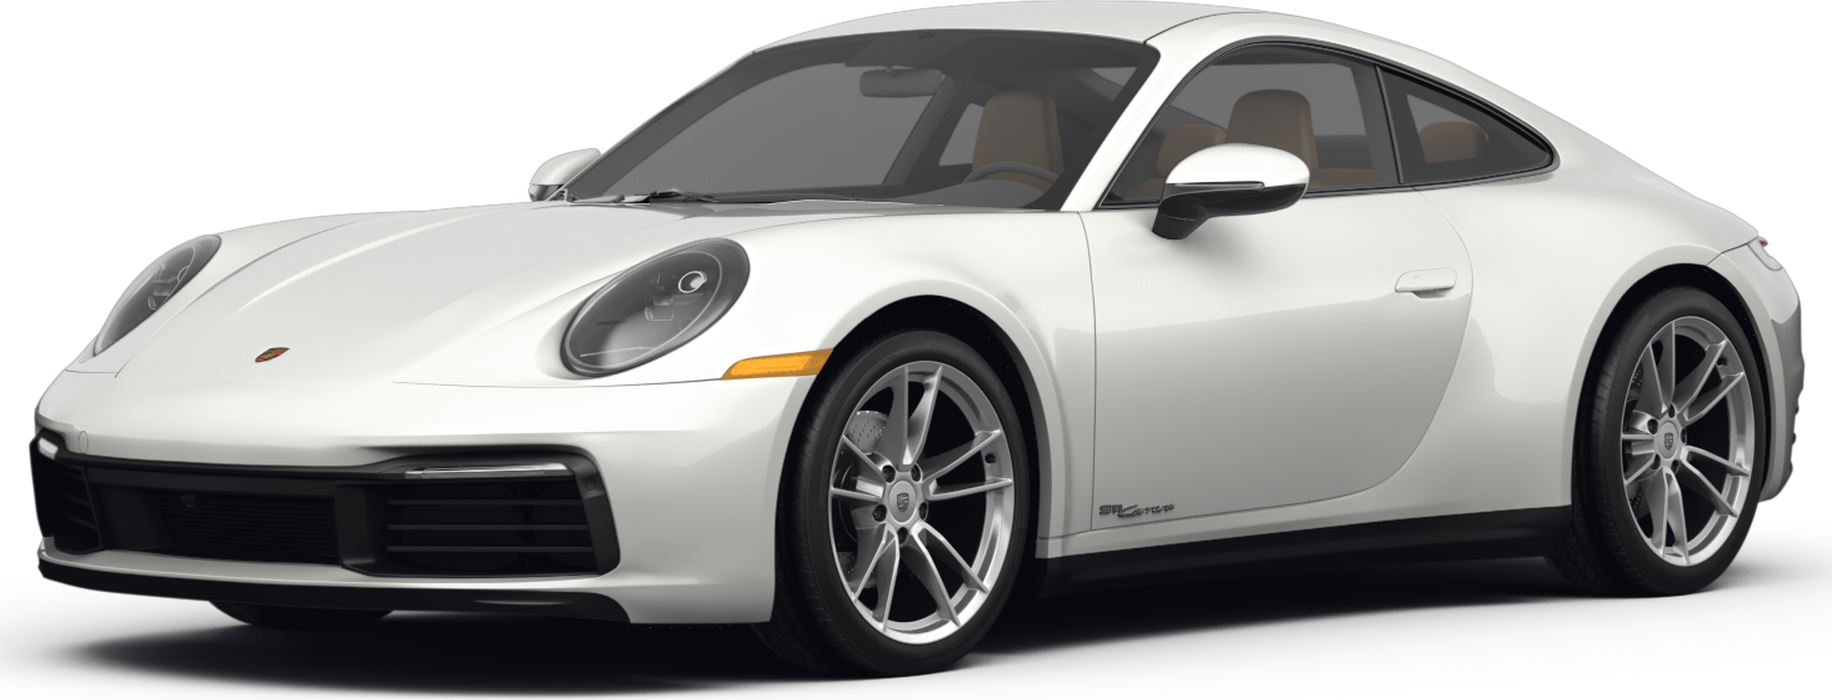 Who Makes Porsche? - Kelley Blue Book